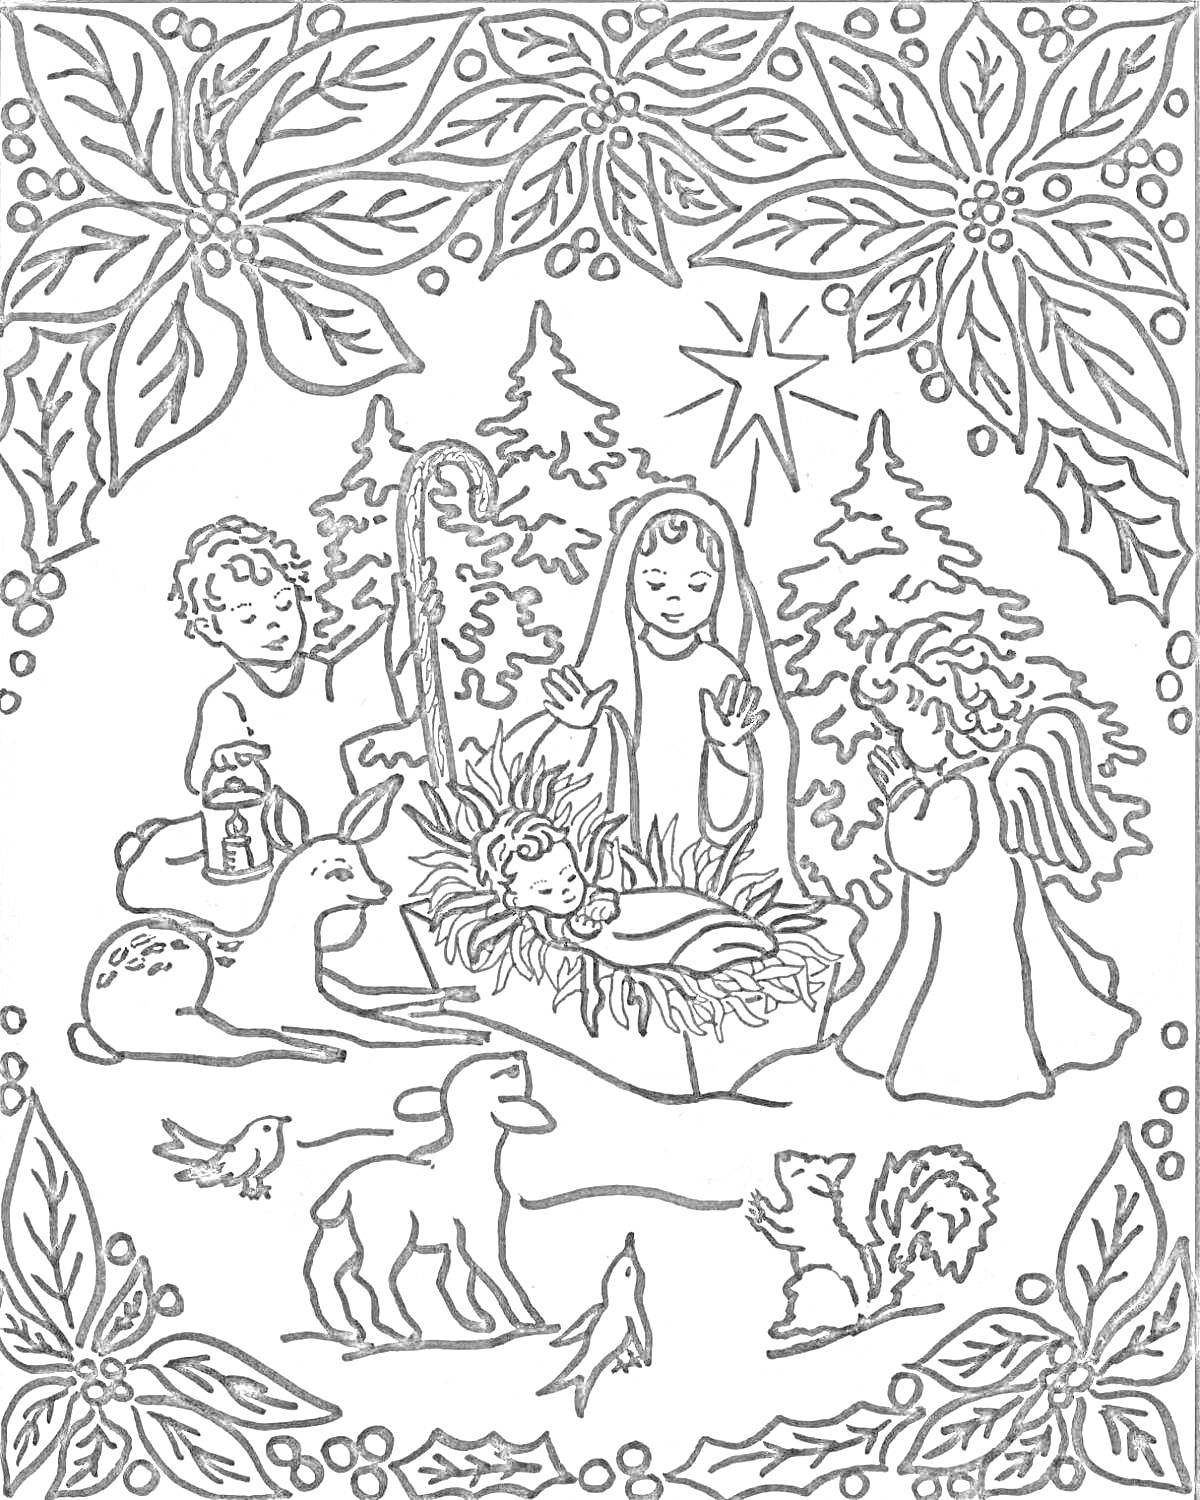 Рождественское распятие с младенцем Христом, Марией, ангелом, детьми, пастушком, ягнёнком, лесными животными и птицами, венок из остролиста с ягодами.